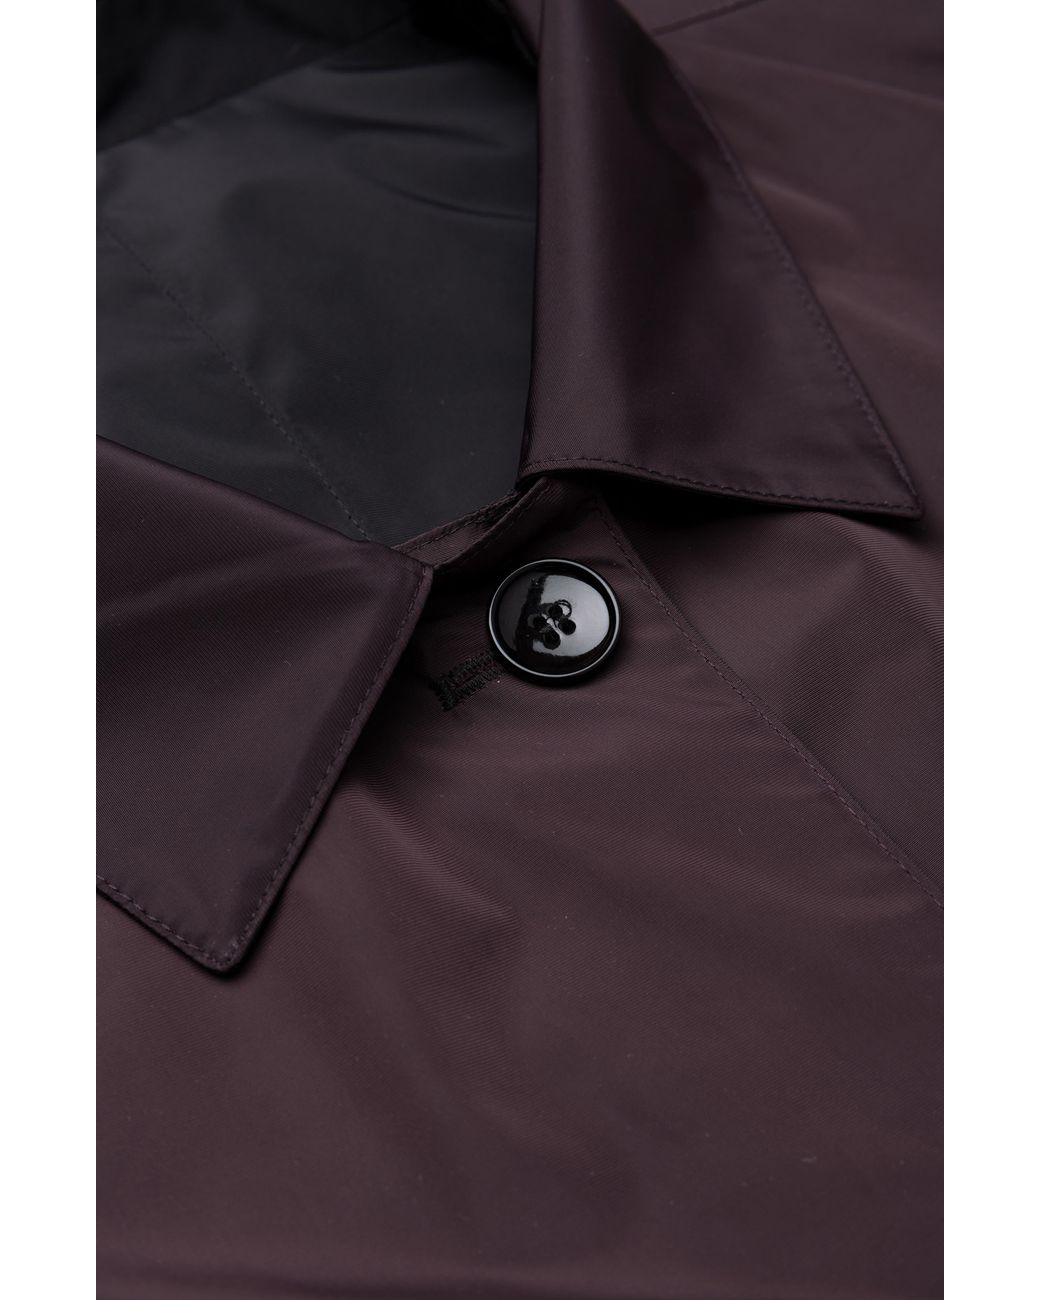 Samuelsohn Black Burgundy Reversible Trench Coat L